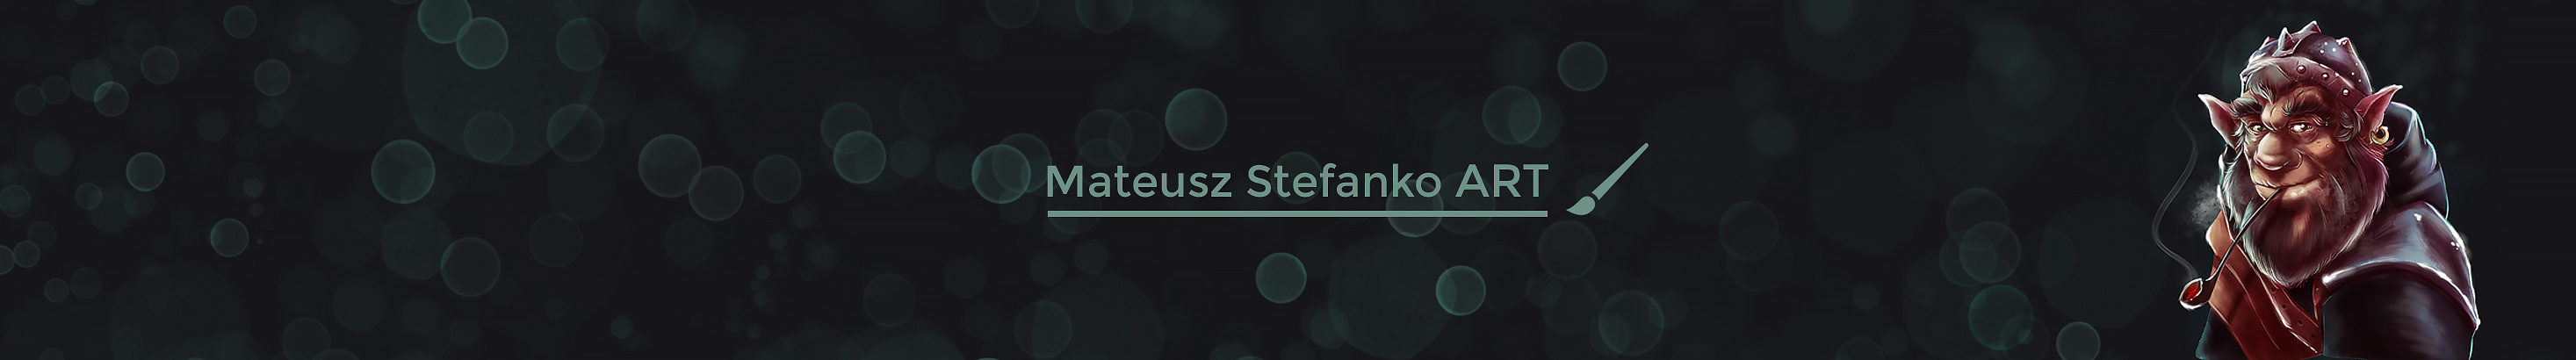 Mateusz Stefankos profilbanner